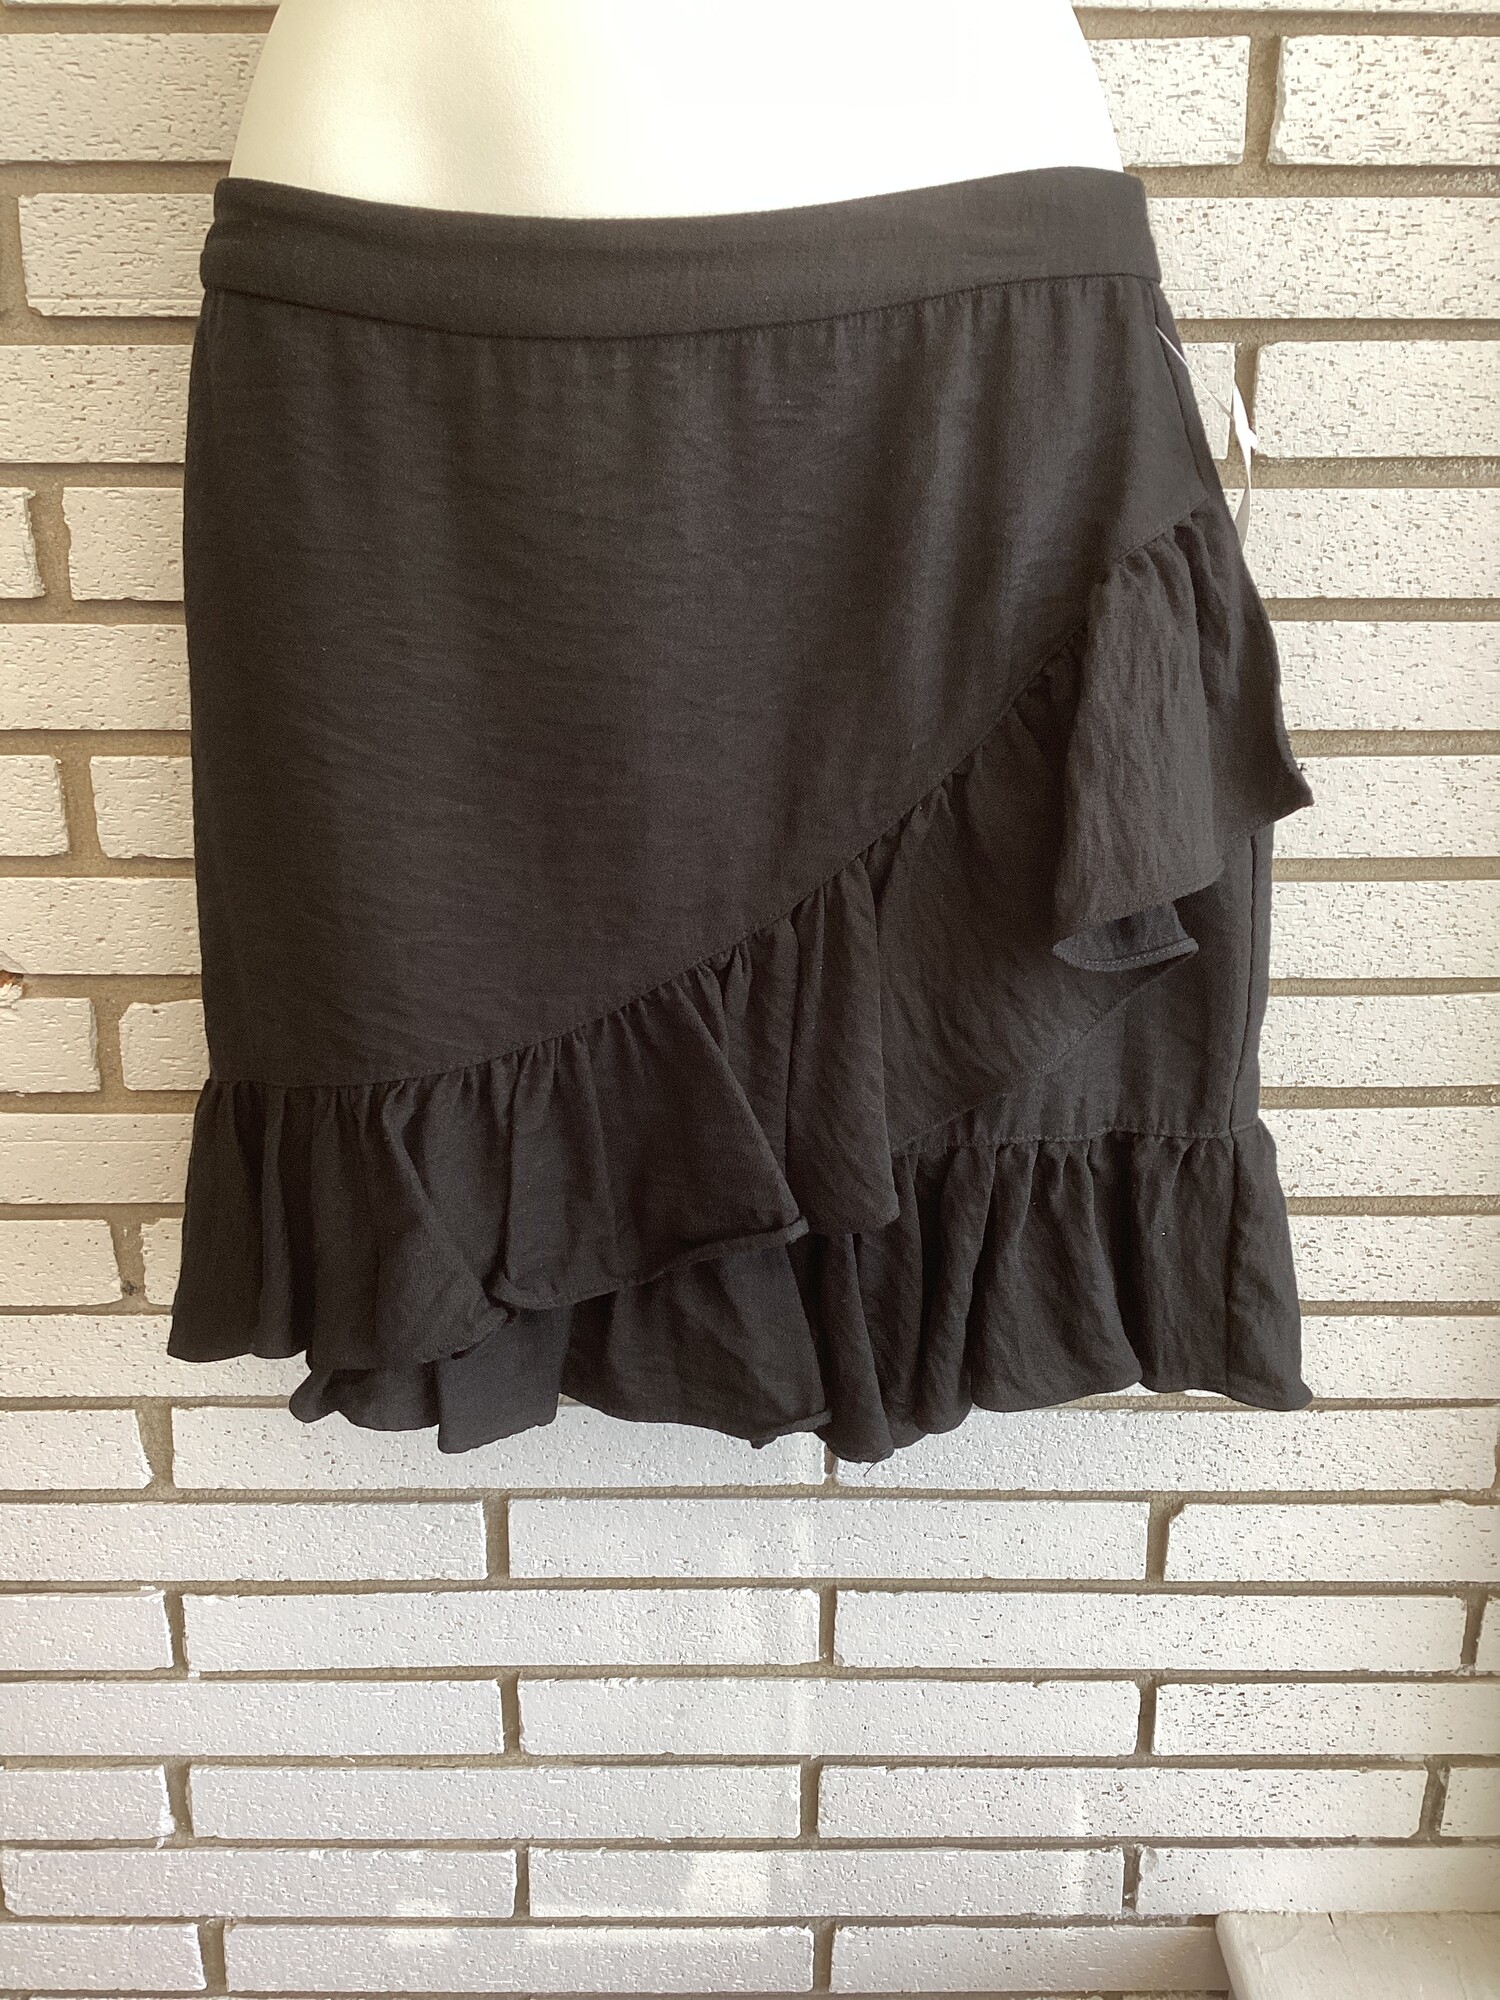 Ruffle Skirt, Black, Size: Small